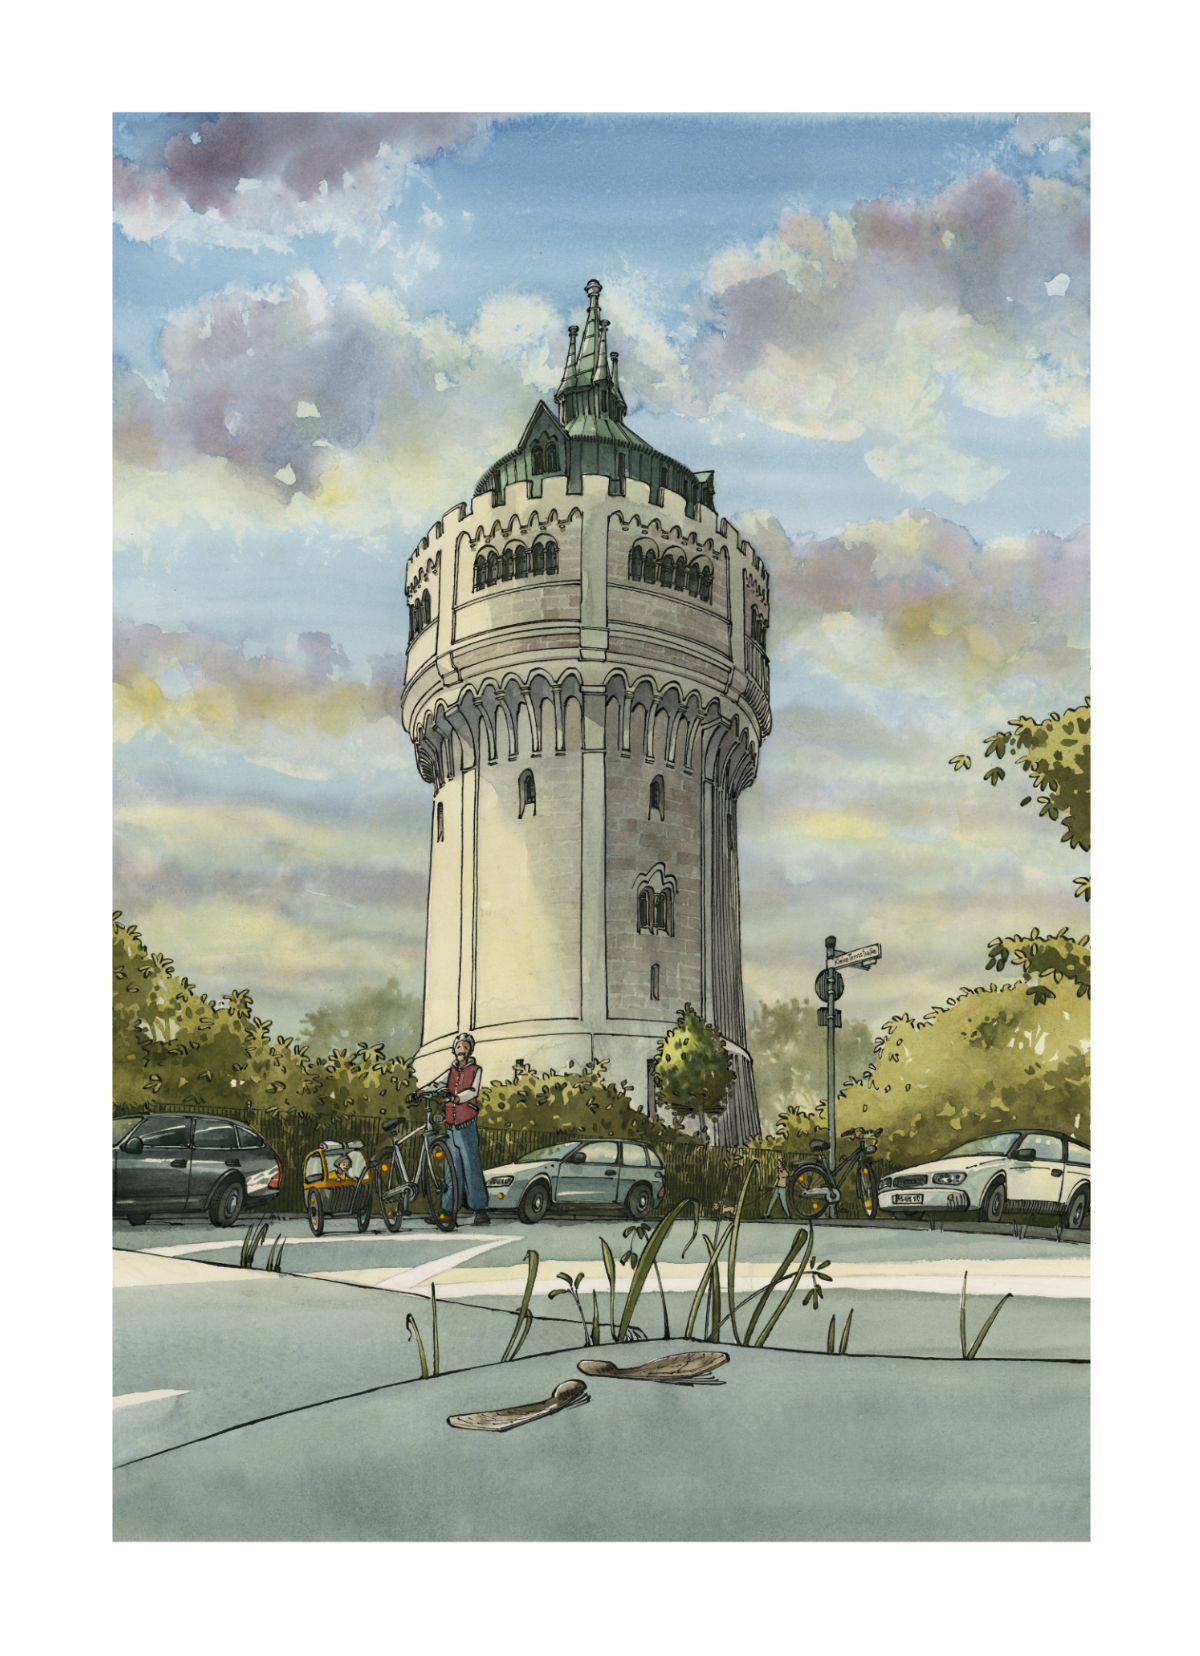 Wasserturm Münster, Bild, Druck, Zeichnung